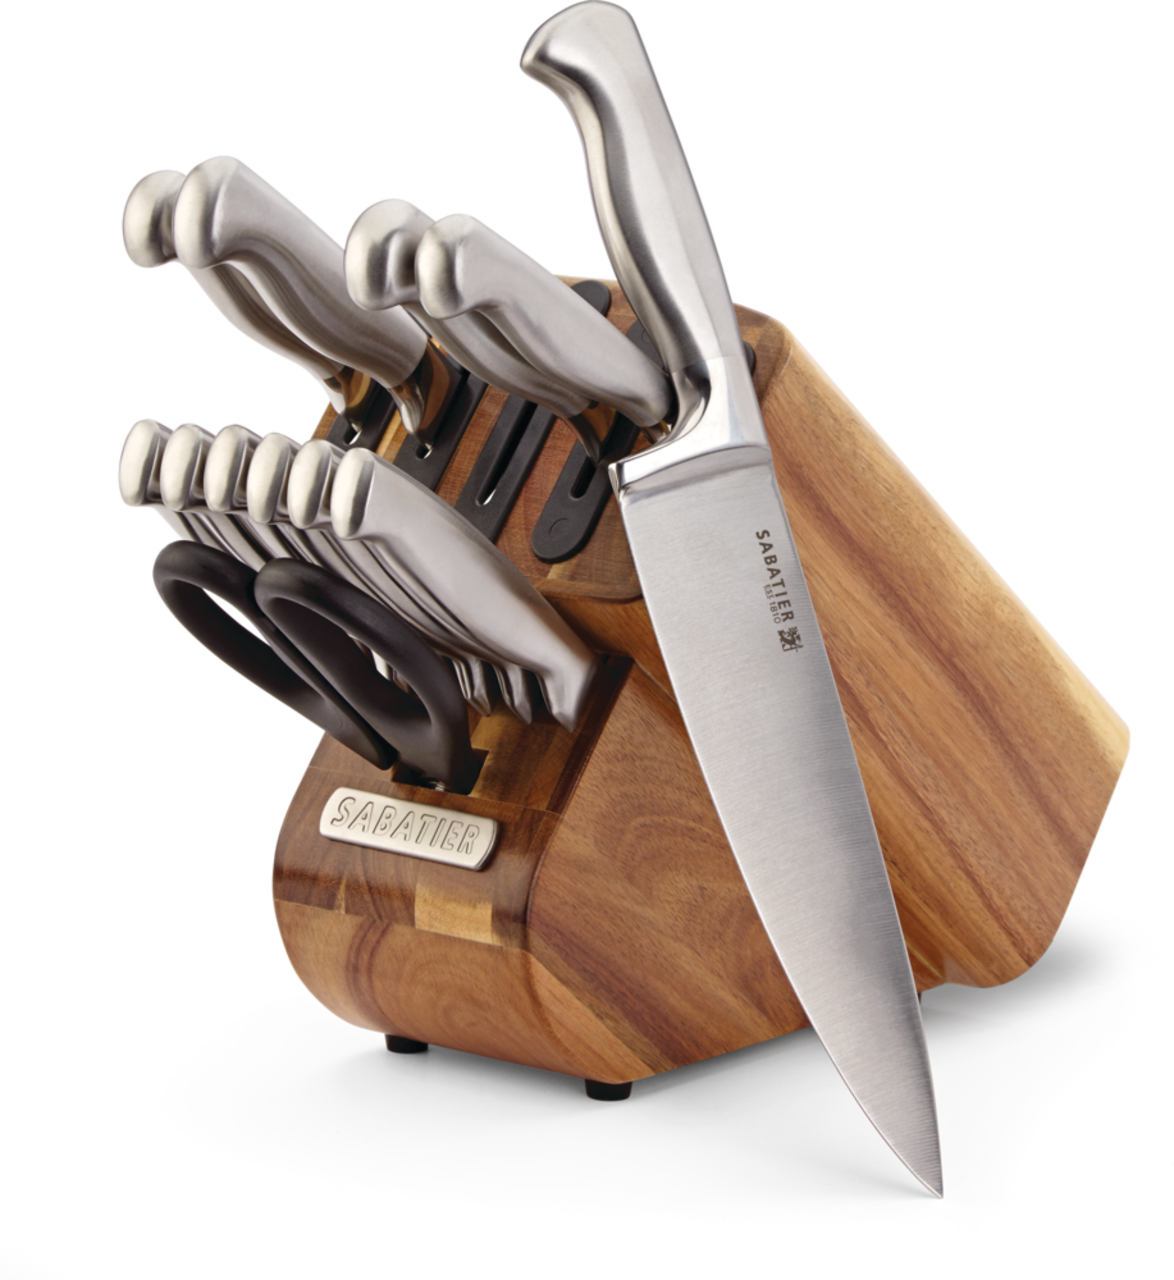 SABATIER Ensemble de 3 couteaux de cuisine - Erresse Shop